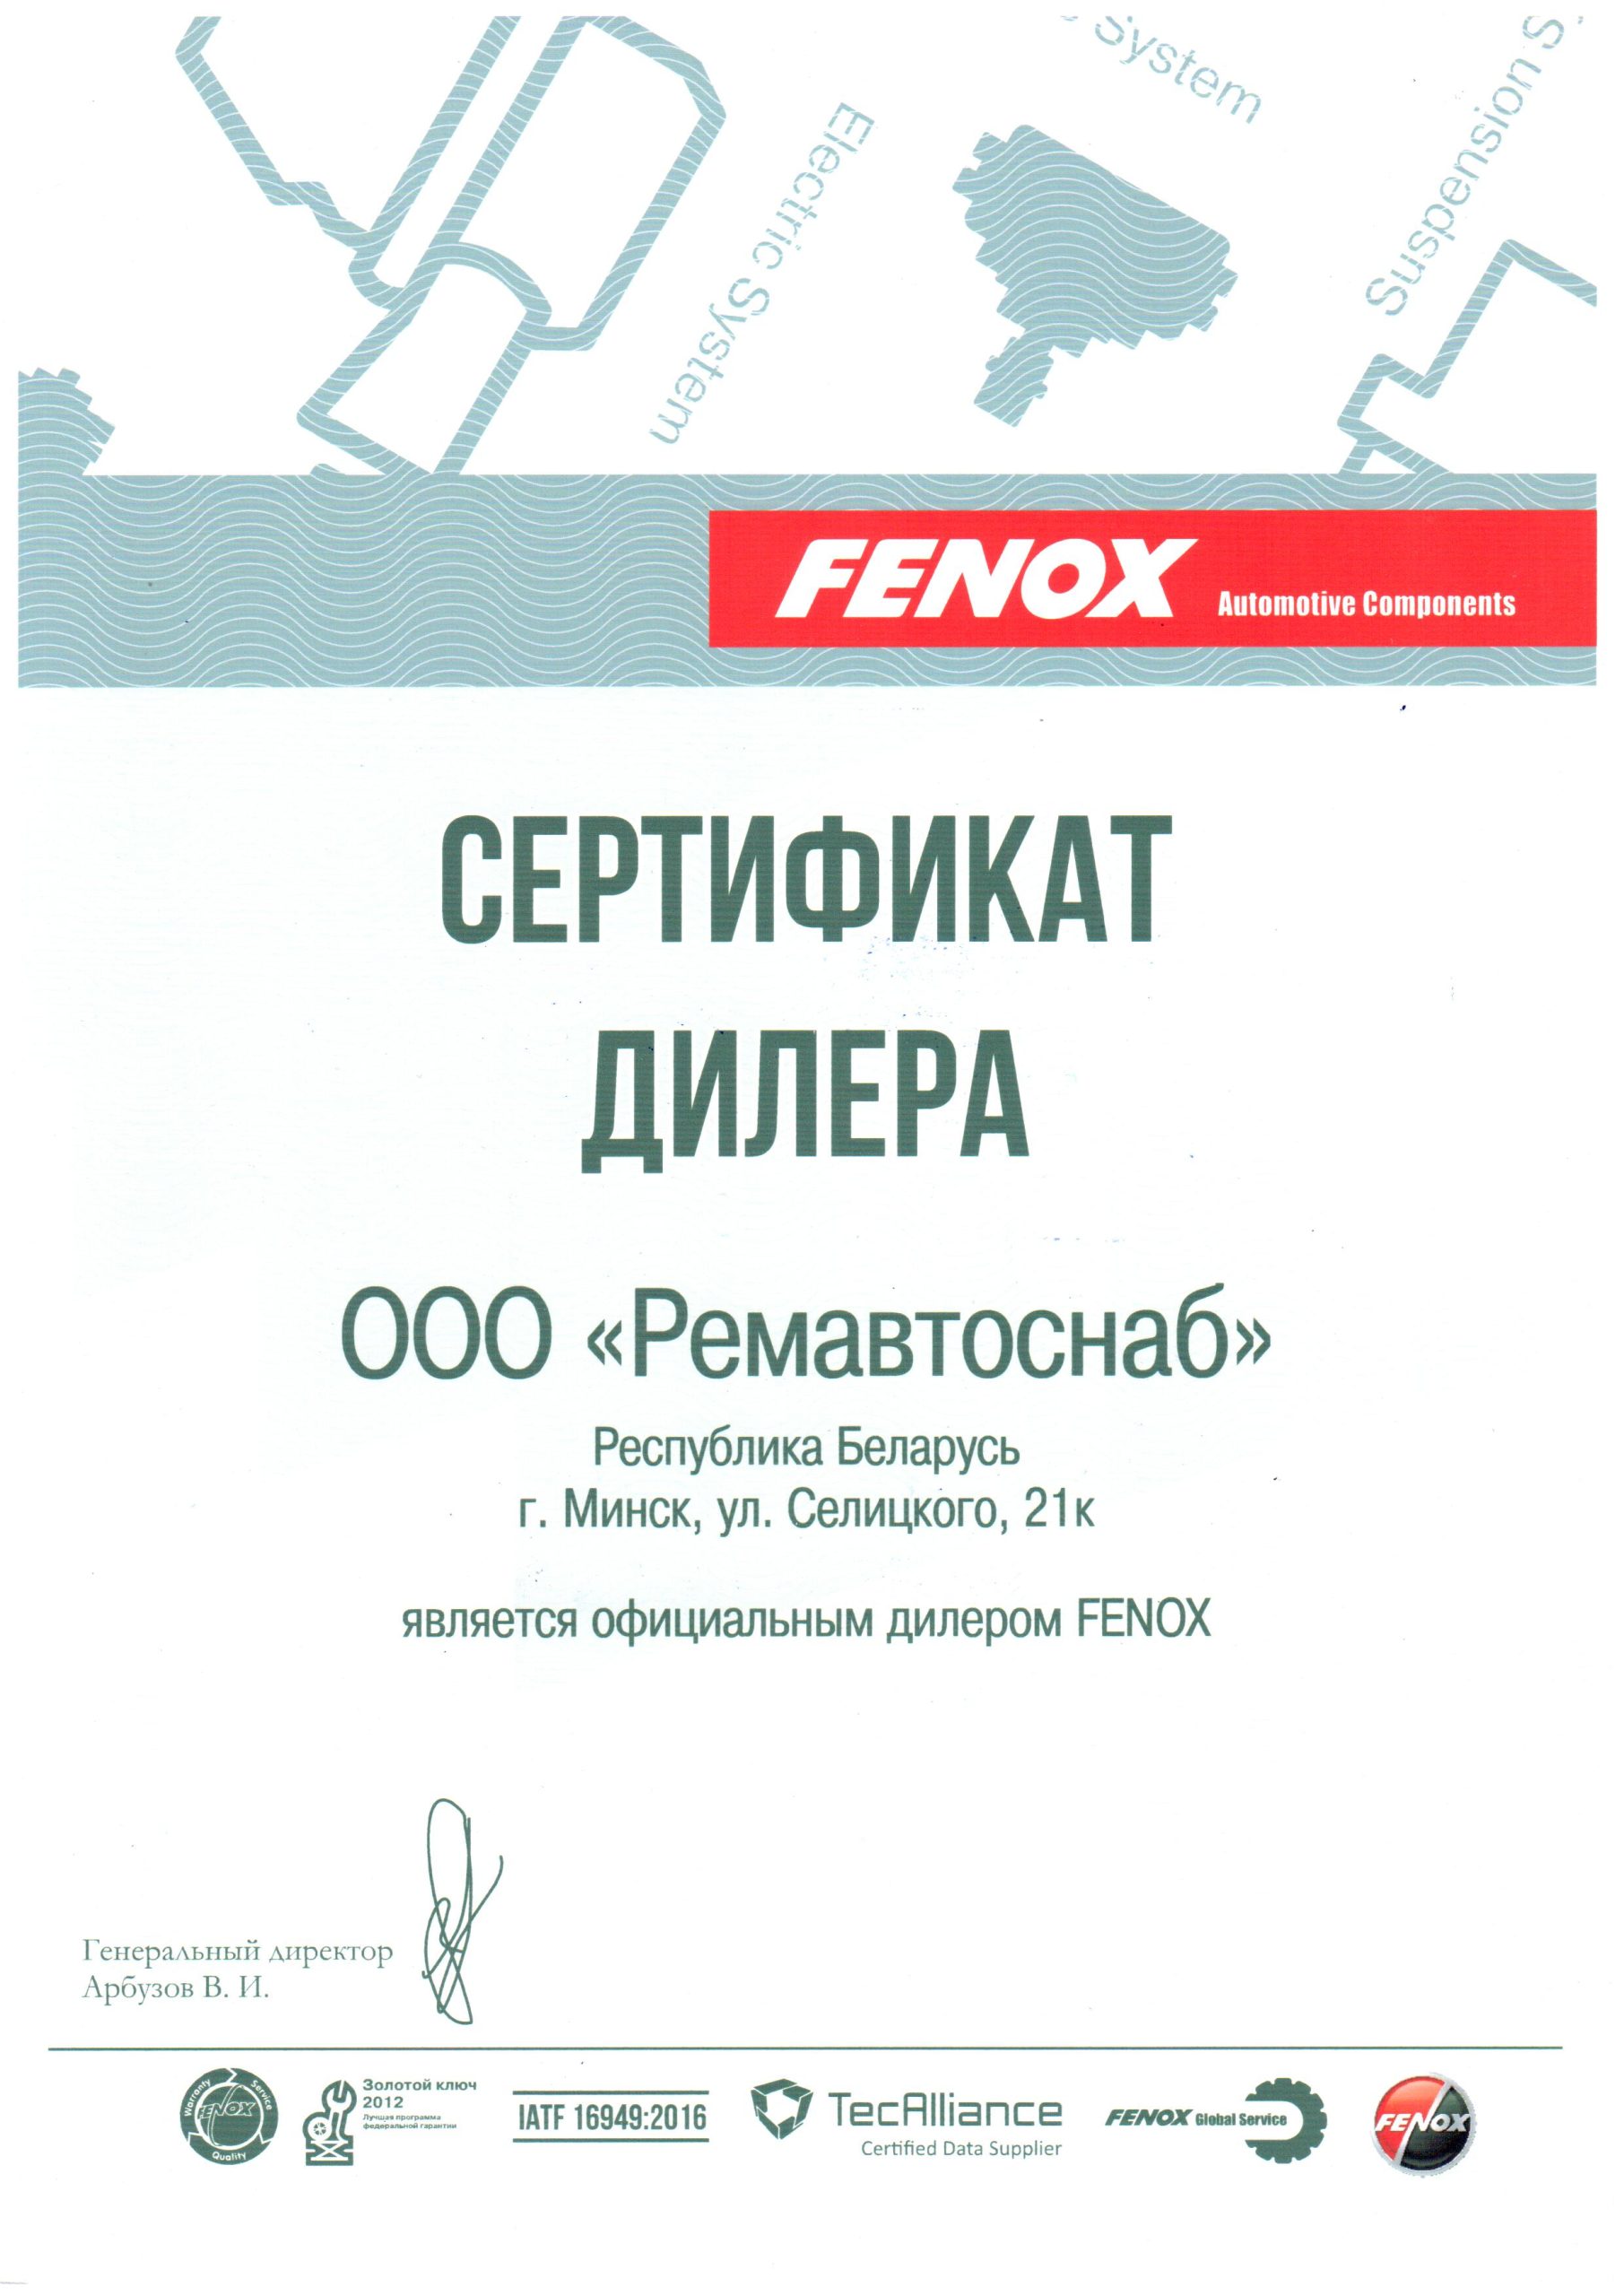 Сертификат дилера — FENOX